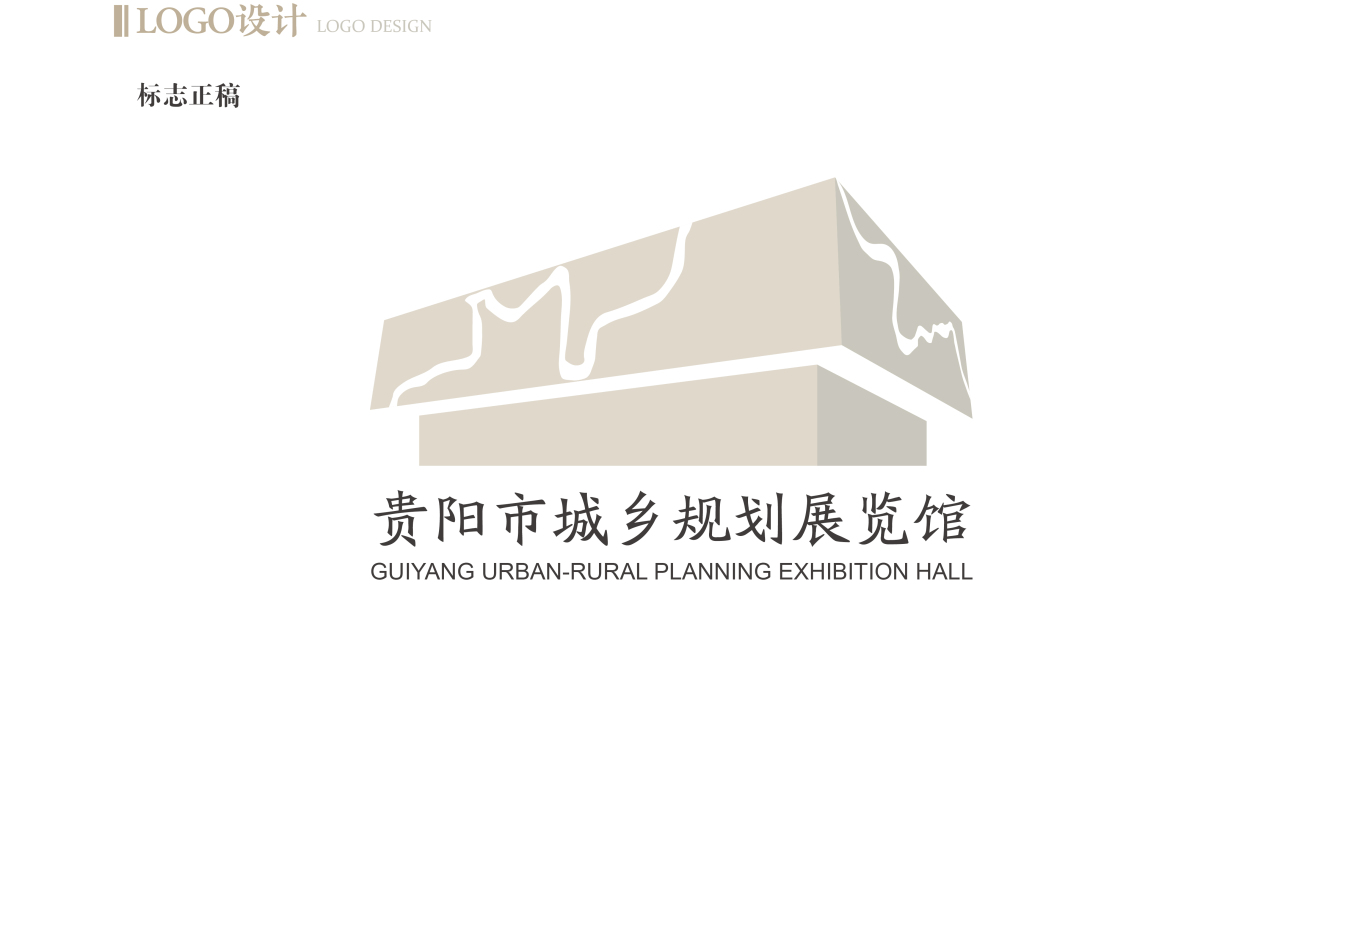 贵阳市城乡规划展览馆logo设计及VI系统应用图0